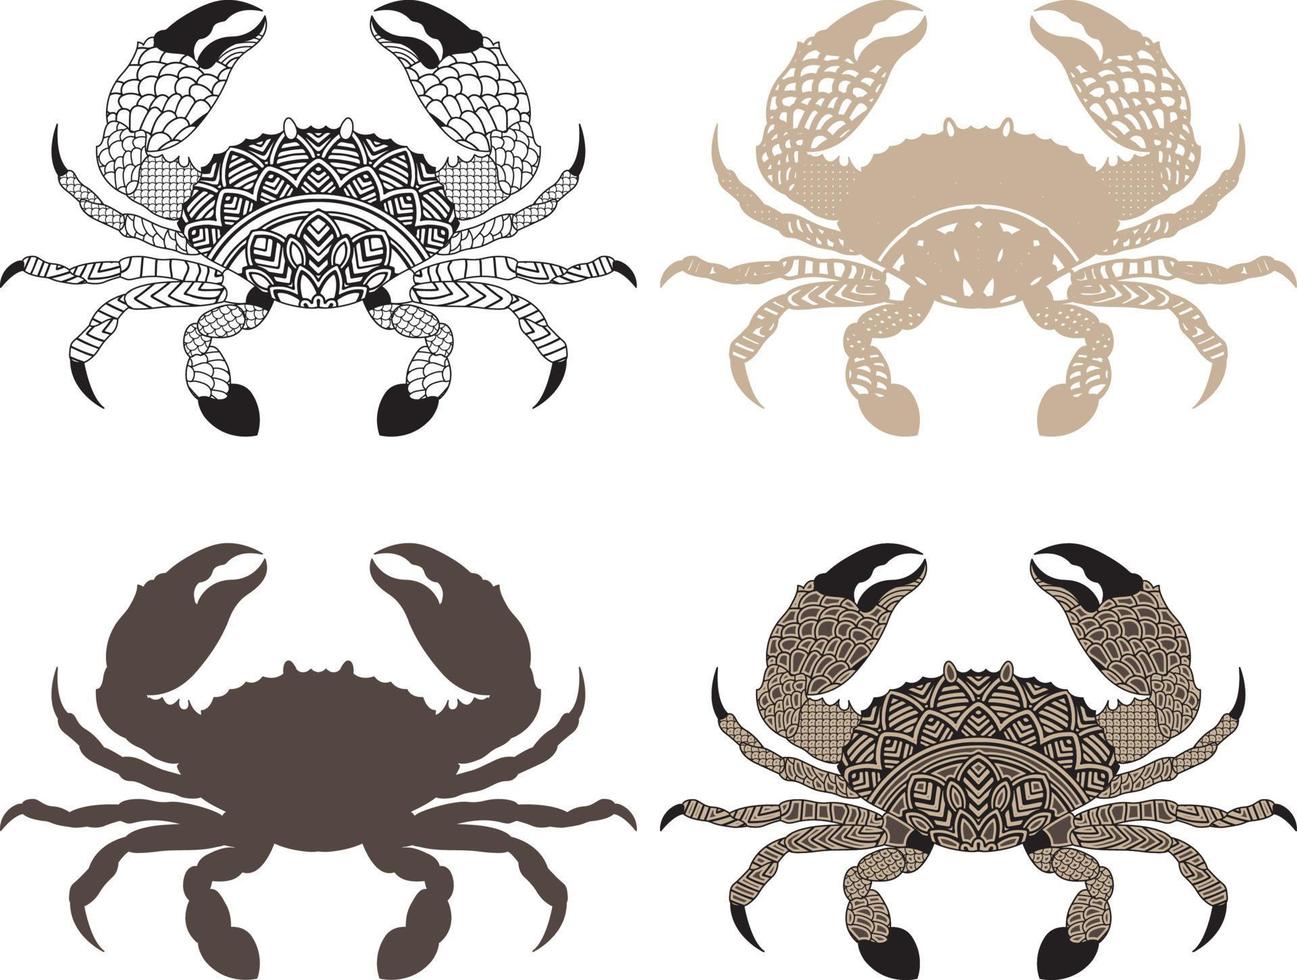 crabe zentangle arts, coloriage antistress pour adultes avec crabe de mer vecteur